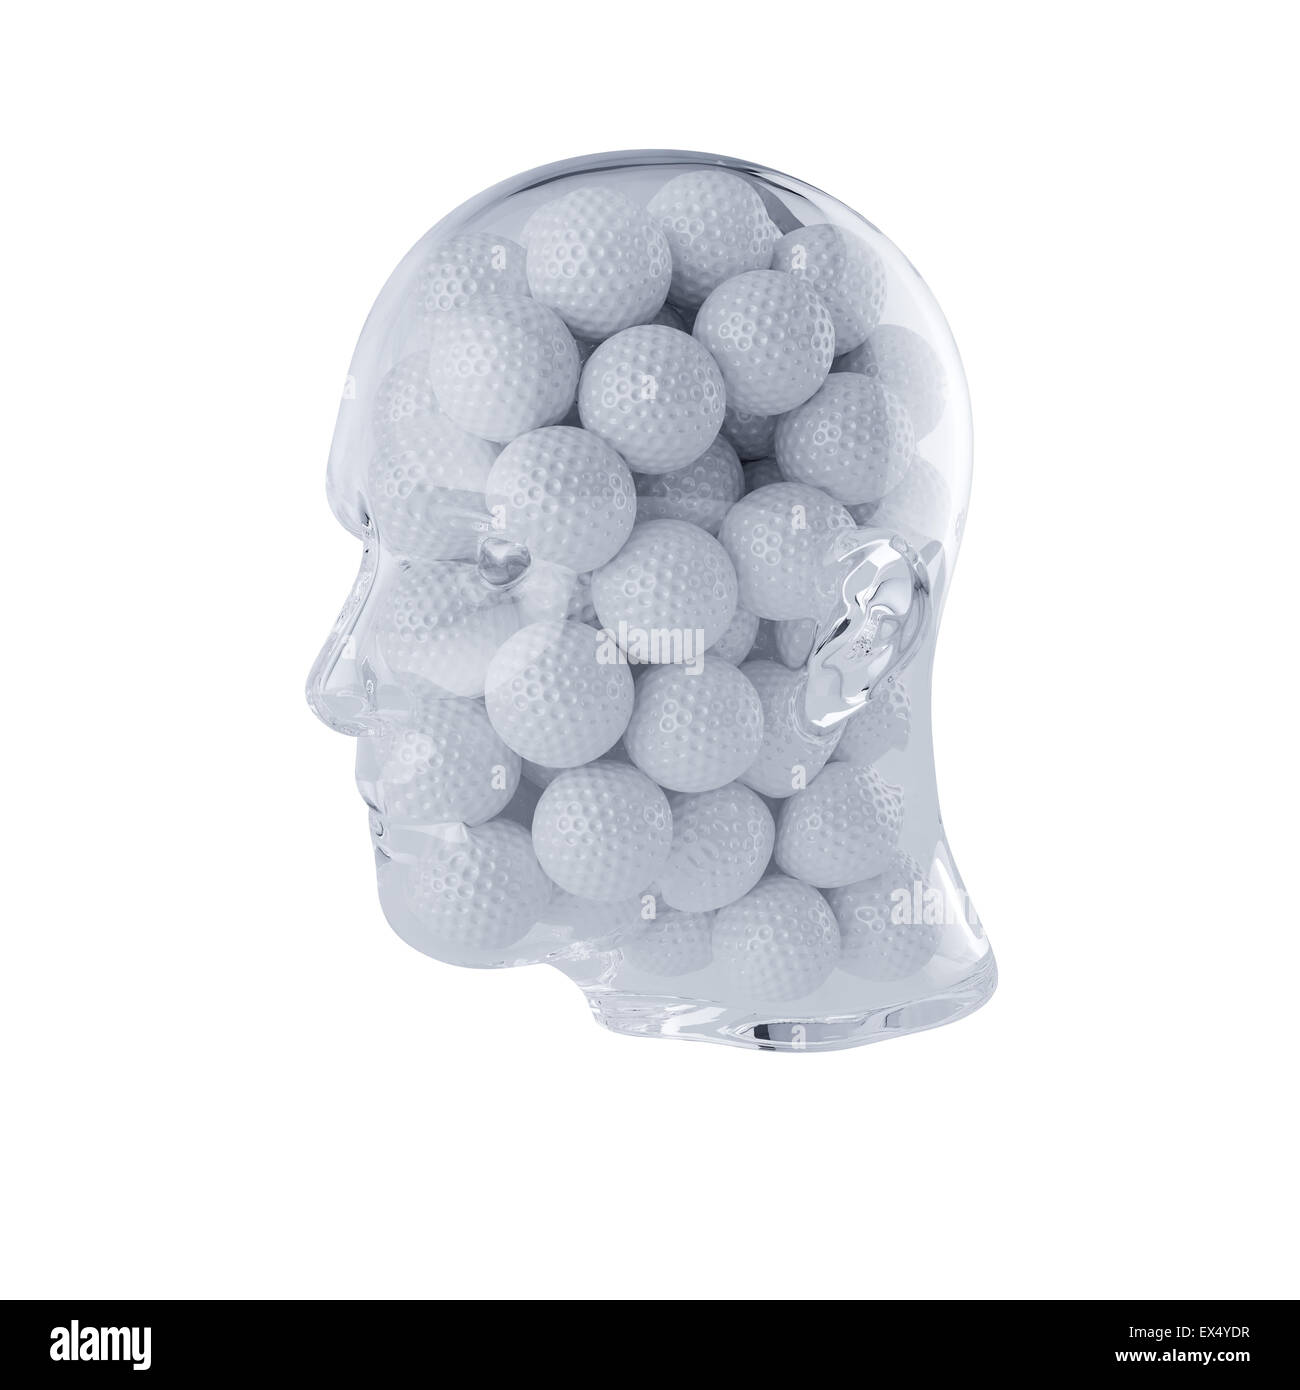 Le rendu 3D de verre transparent remplis de tête des balles de golf. Isolé sur fond blanc. Concept lecteur Banque D'Images